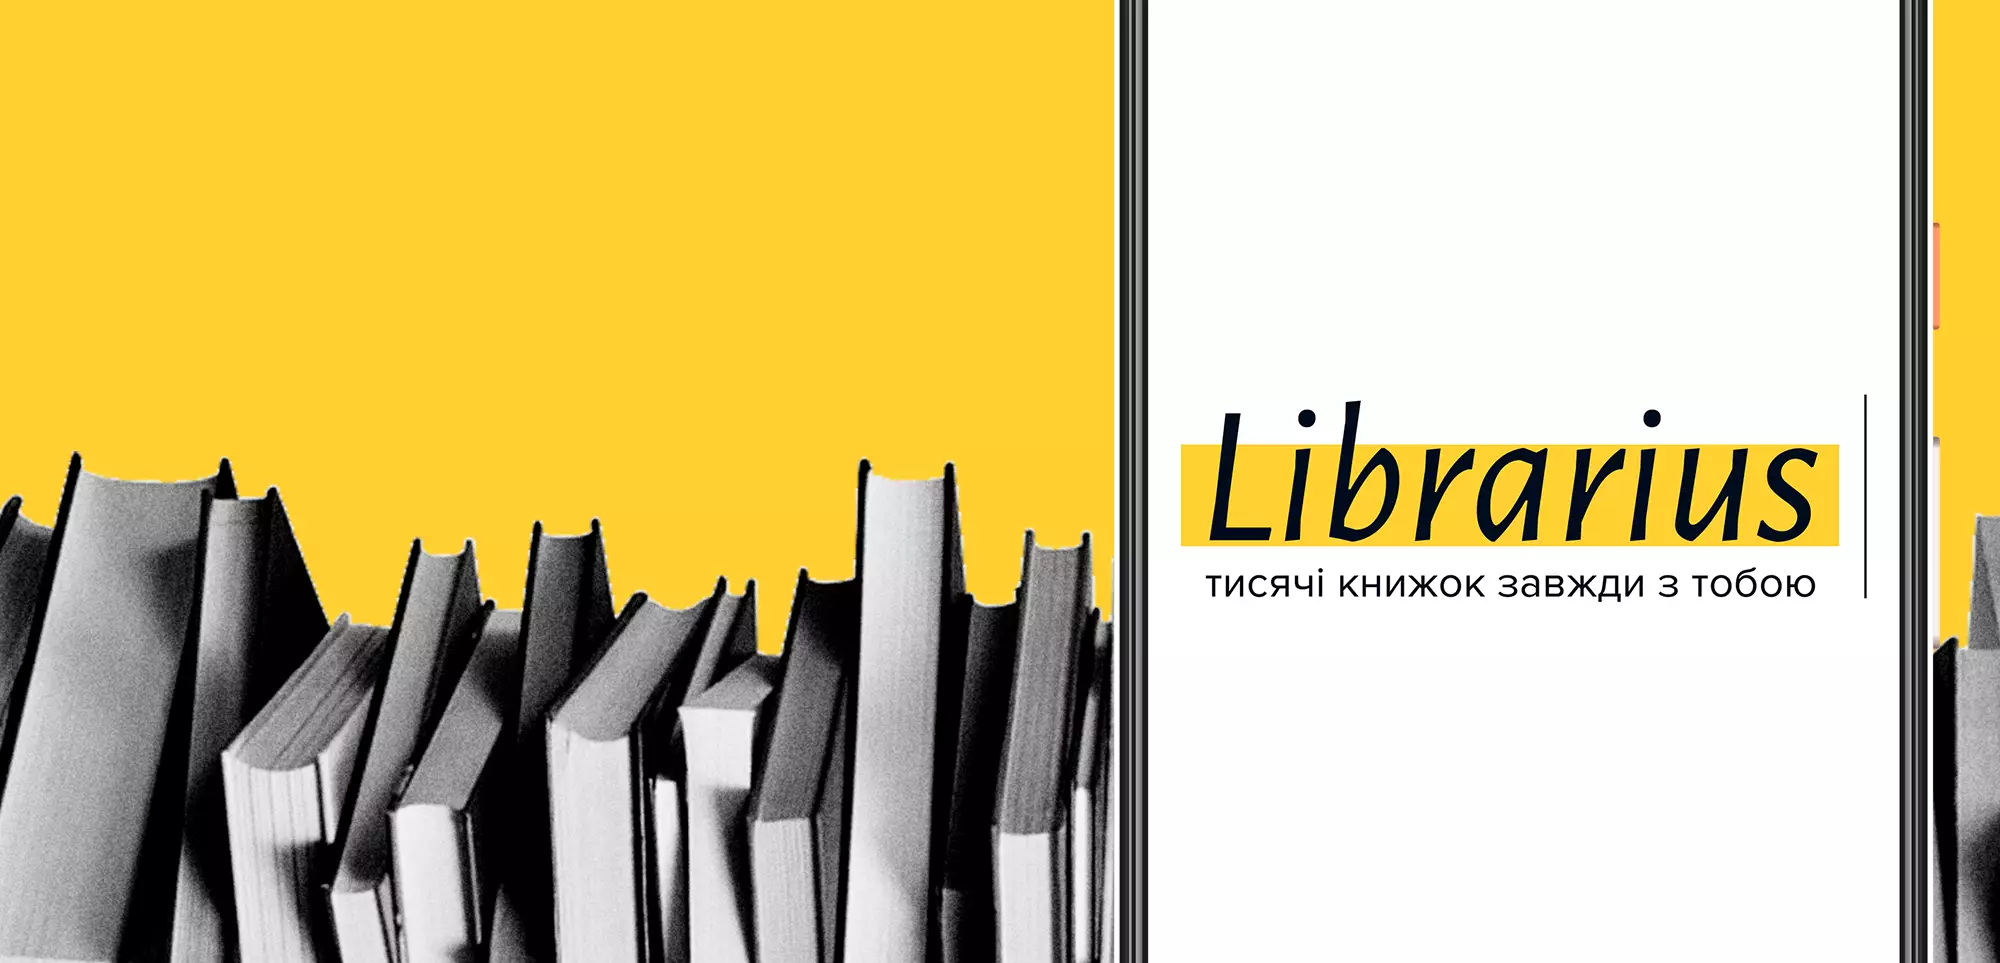 У «Librarius» відкрили безкоштовний доступ до частини книжок